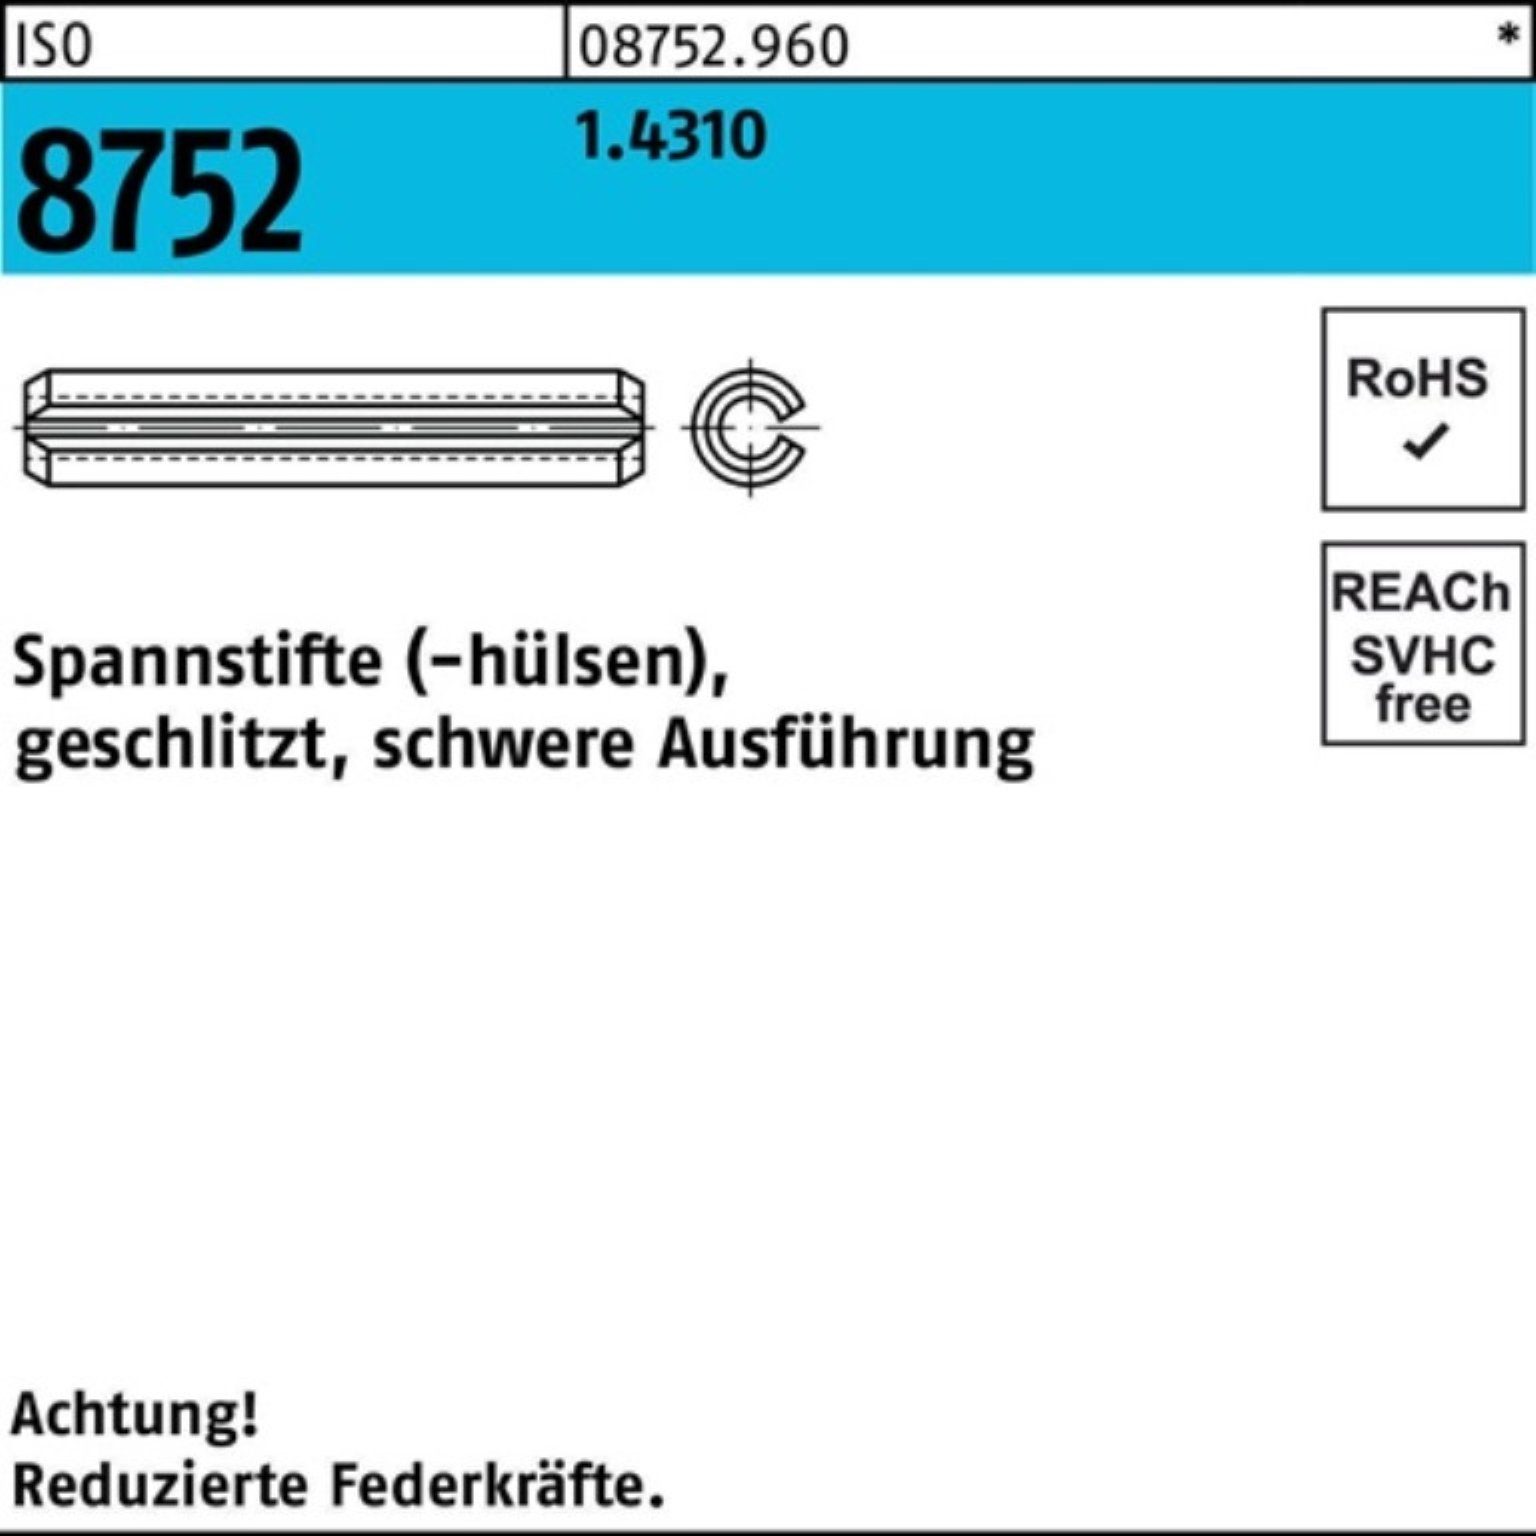 3x Spannstift Spannstift 1.4310 100er Ausf. 28 8752 schwere geschlitzt Pack ISO 5 Reyher